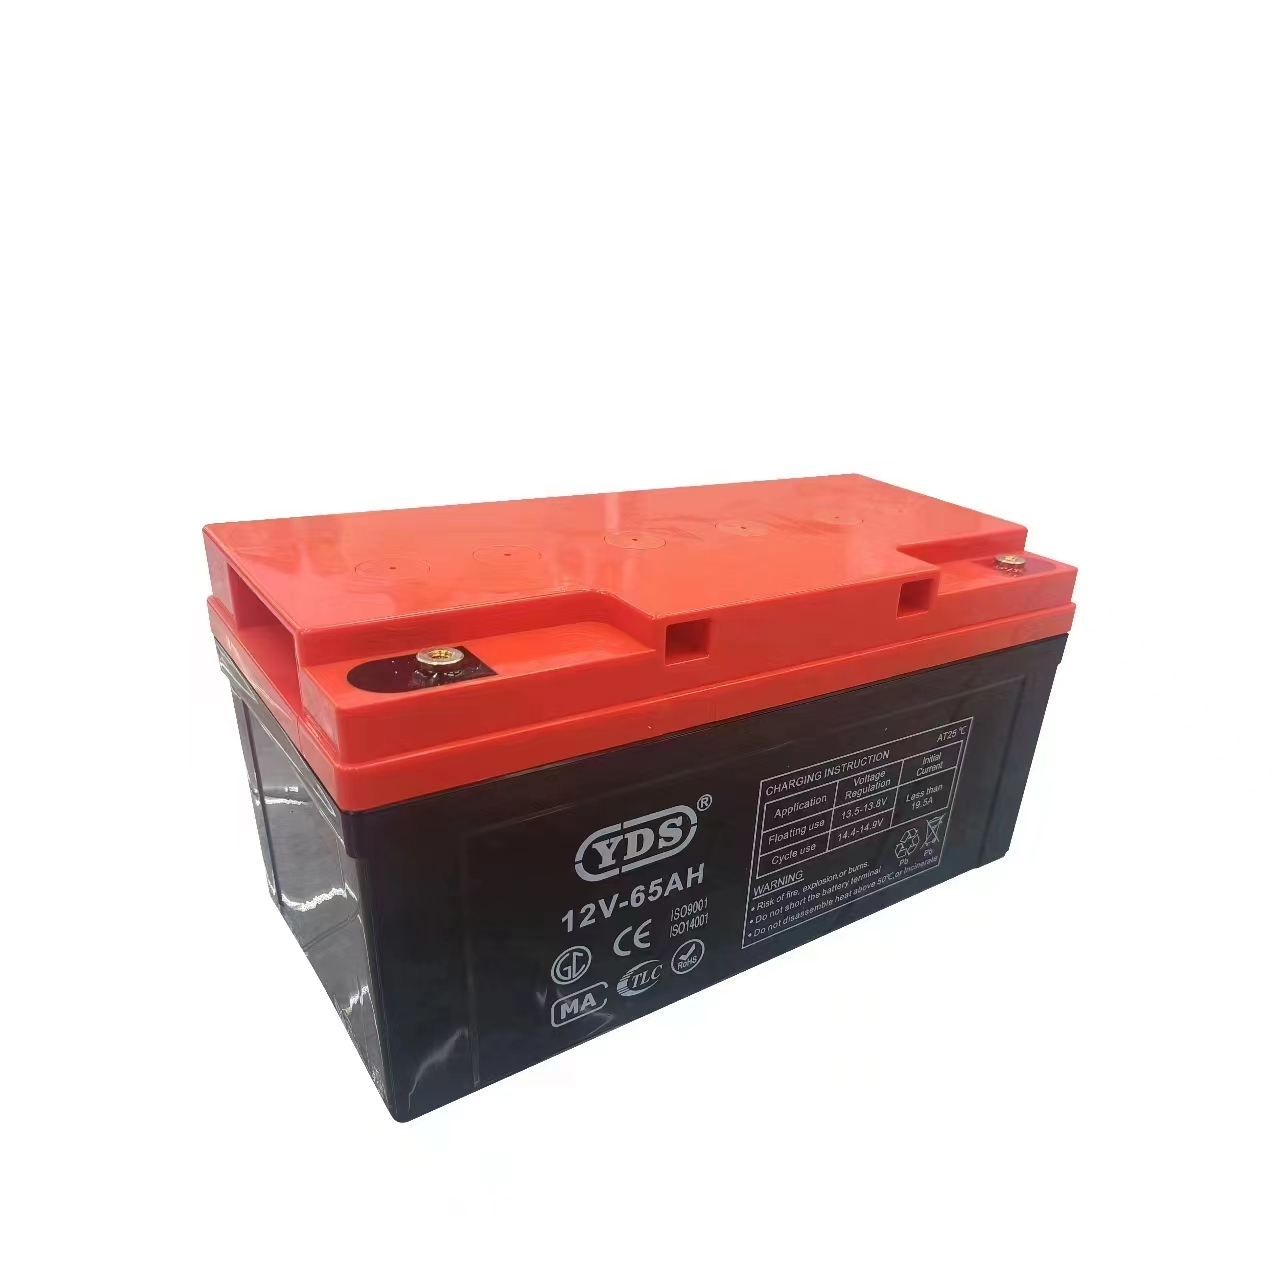 YDS高品质蓄电池安全可靠 260AH